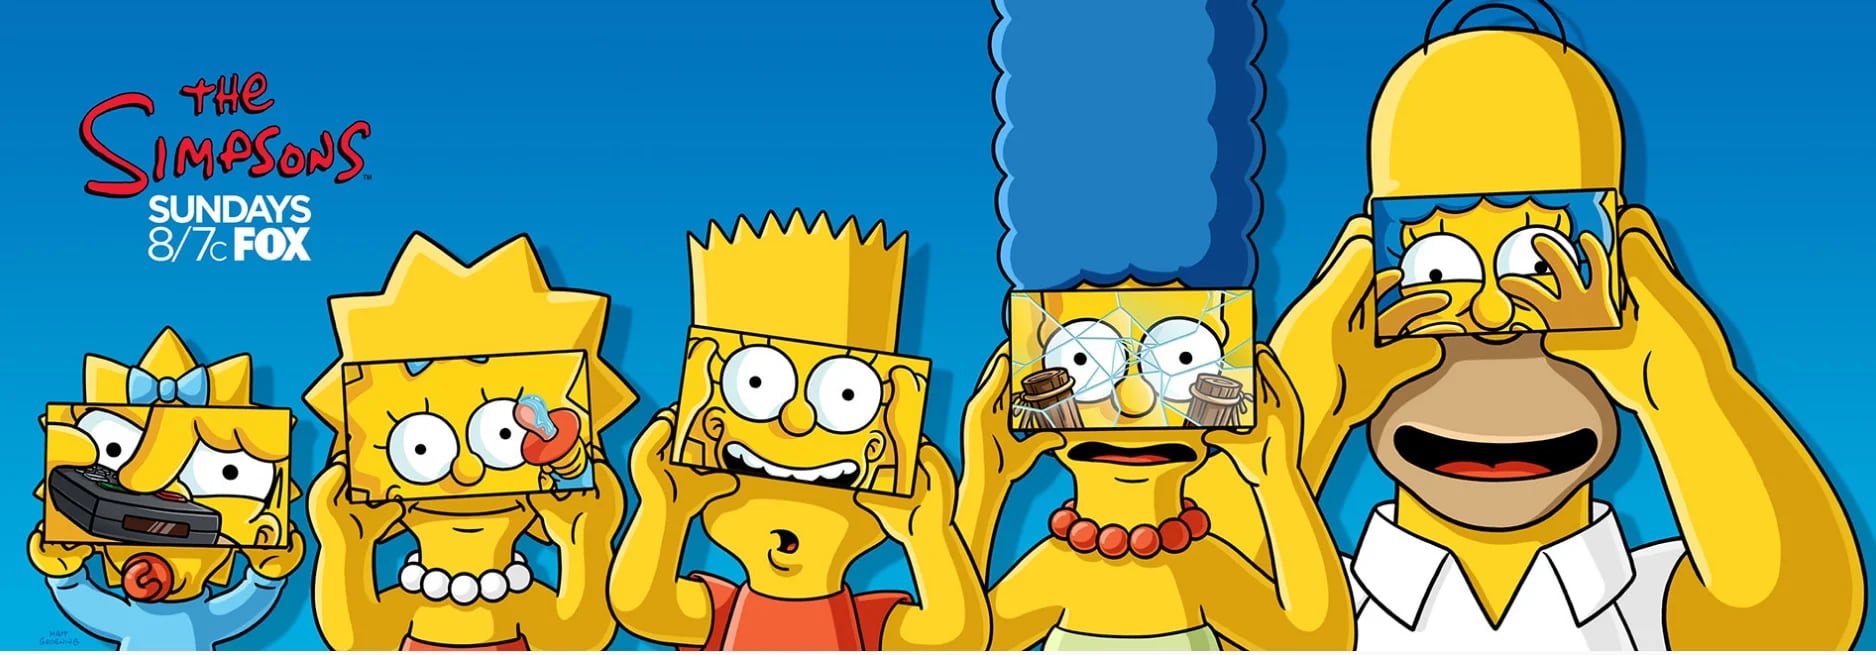 Los Simpsons es una serie animada creada por Matt Groening para Fox Broadcasting Company (20TH Century Fox Televisión- Matt Groening)